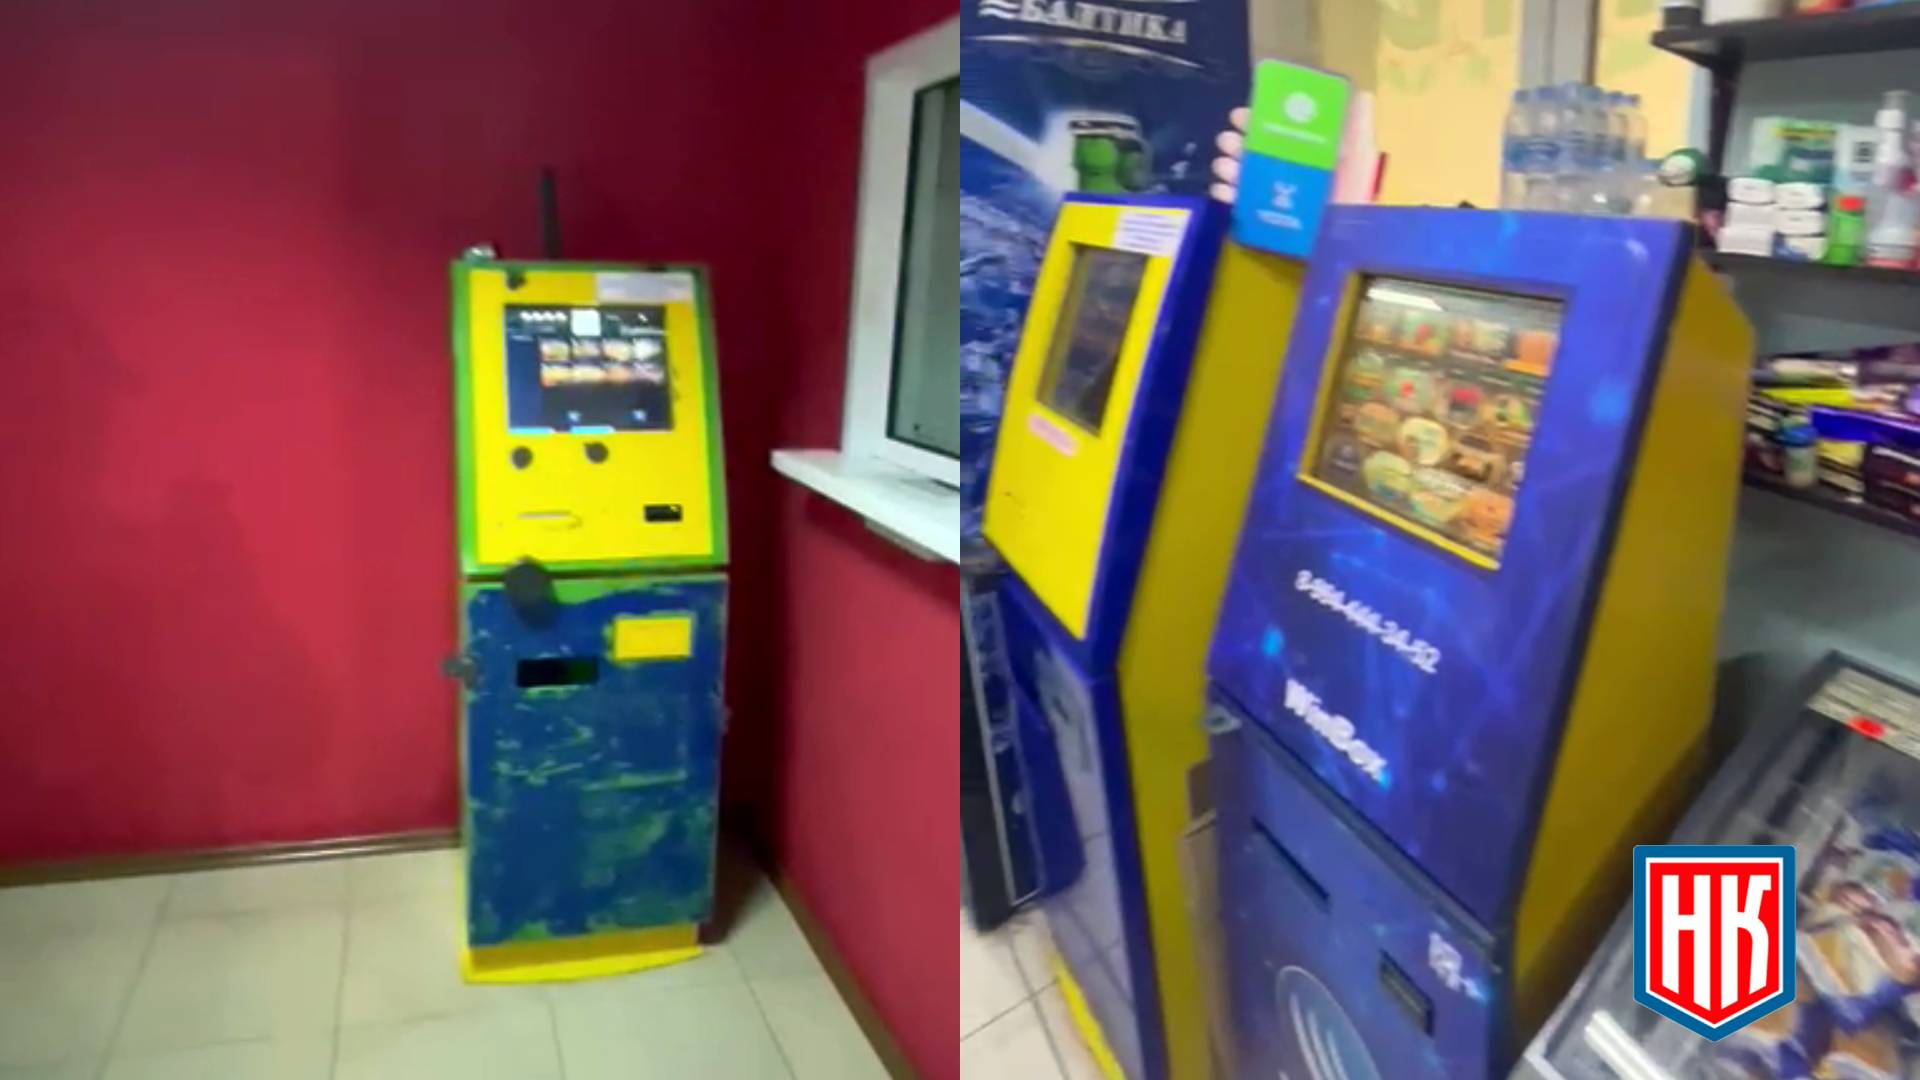 Игровые автоматы в Тюмени никто не проверяет